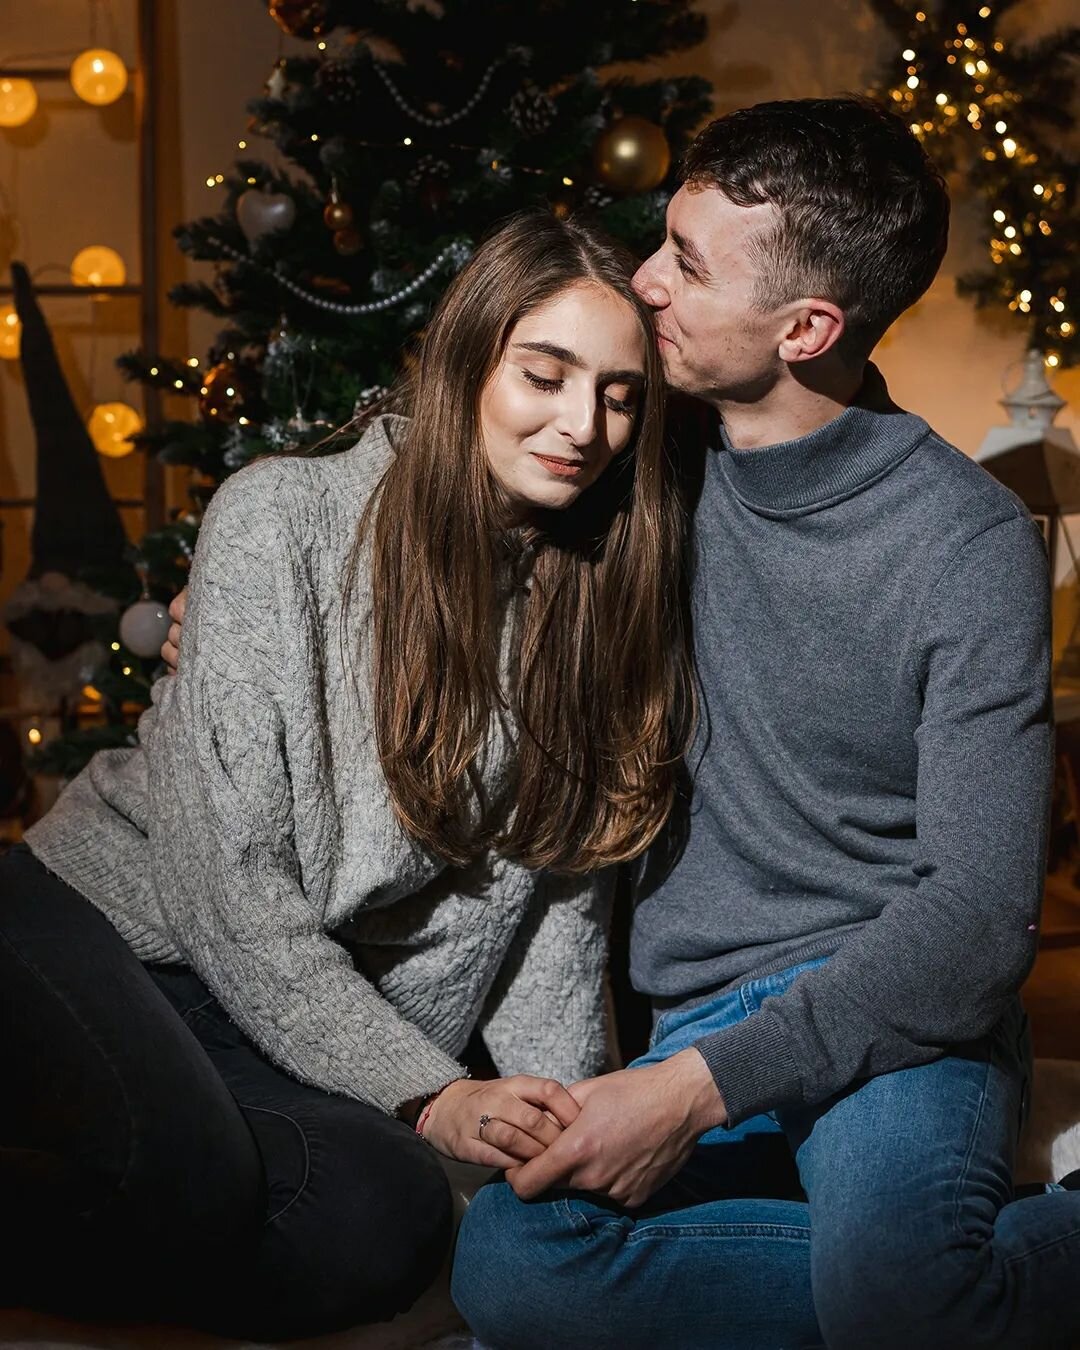 Povești de crăciun cu Anca și Robert ❤ emoții sincere și amintiri frumoase 🥰
Mai sunt ultimele locuri la ședințele de Crăciun 😊 vă aștept și pe voi
#fotografcluj #christmasphotoshoot #christmasstories #cluj #sesiunefotocraciun #craciun #couplegoals